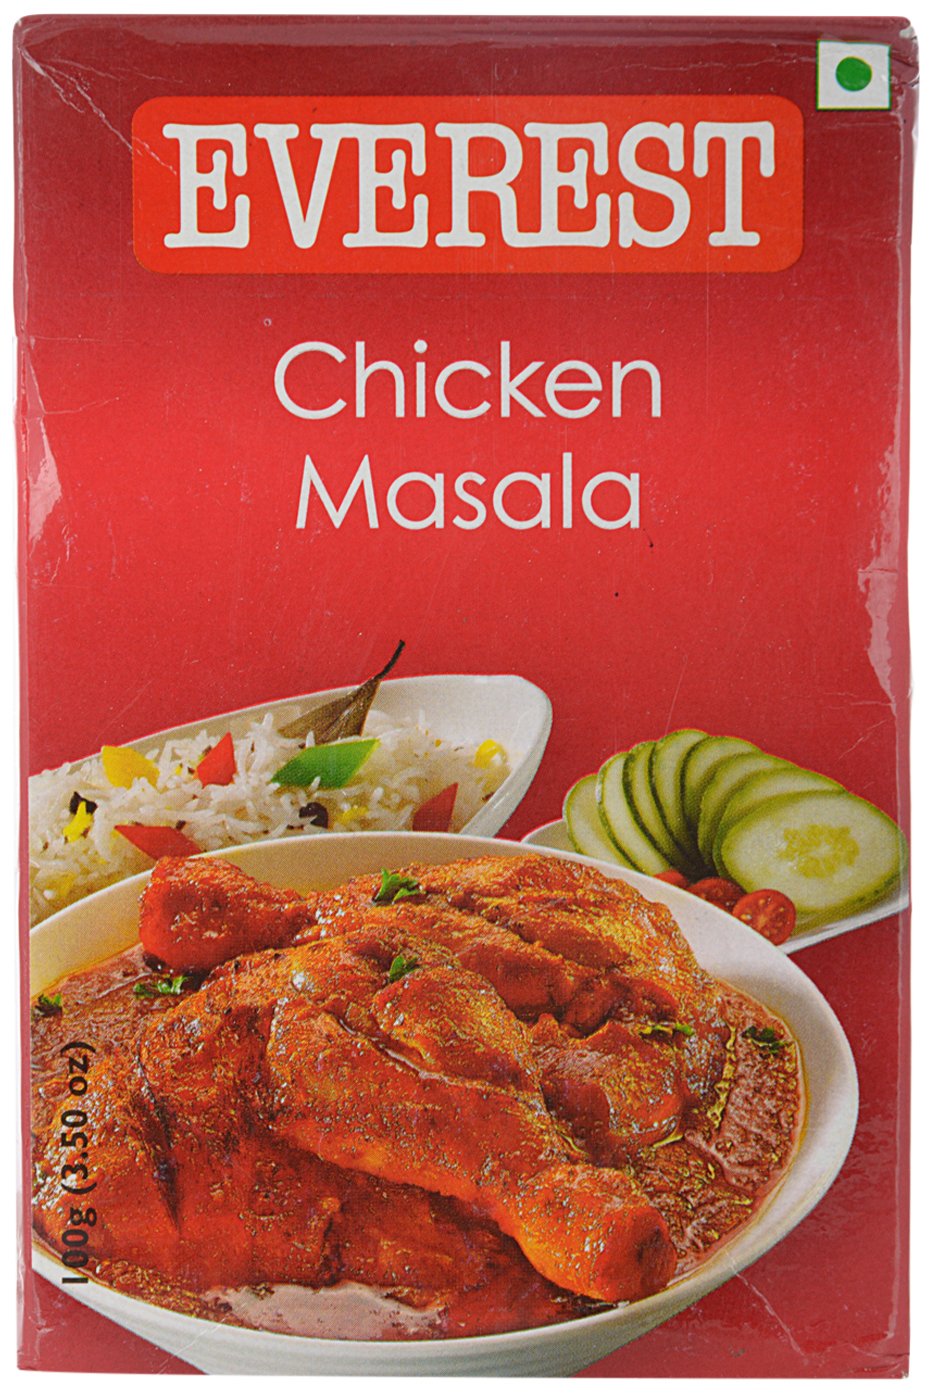 10 Best Chicken Masala Powder in India